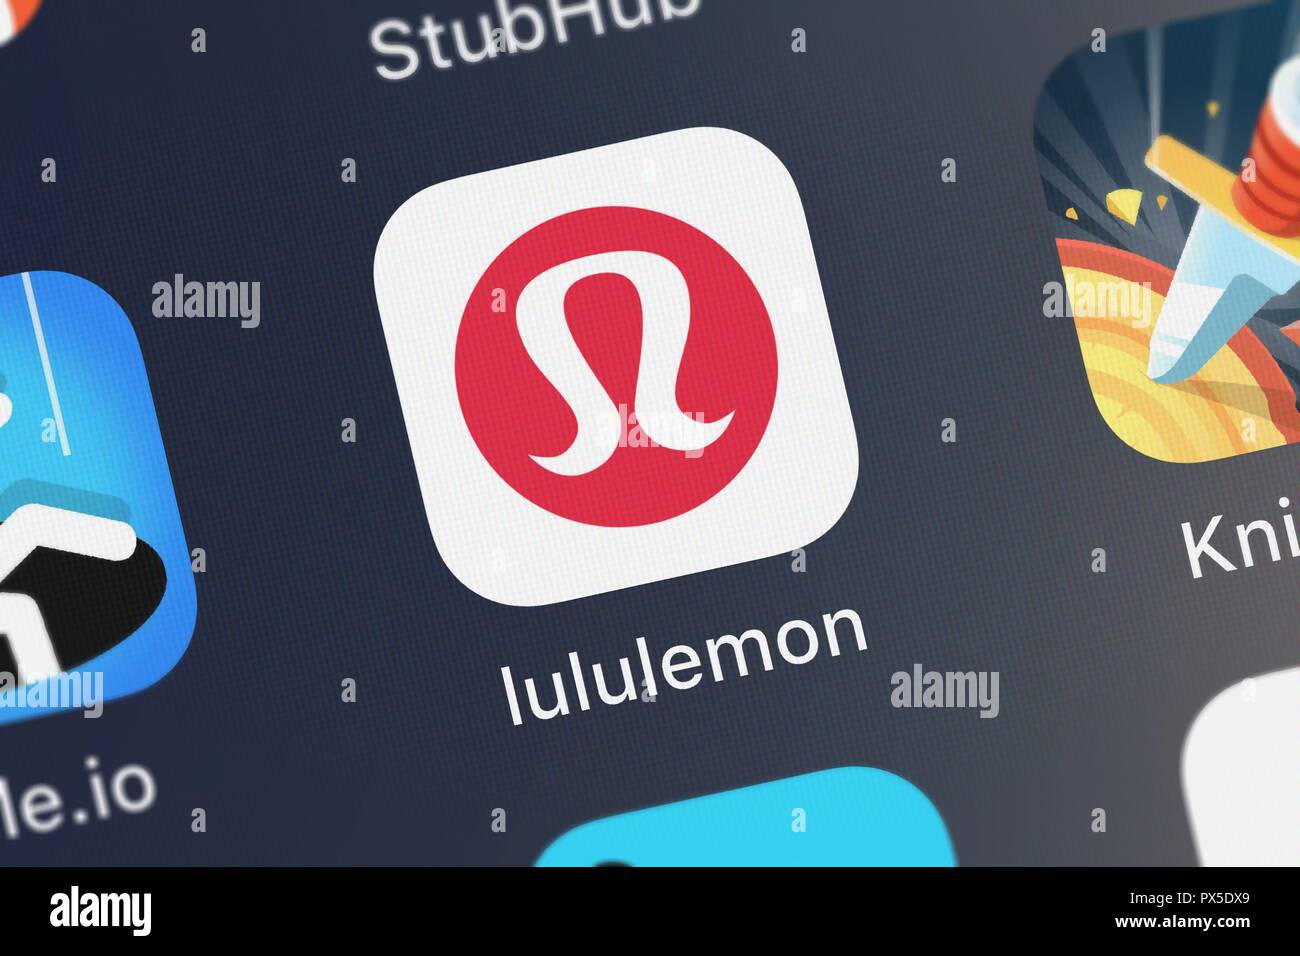 lululemon united kingdom